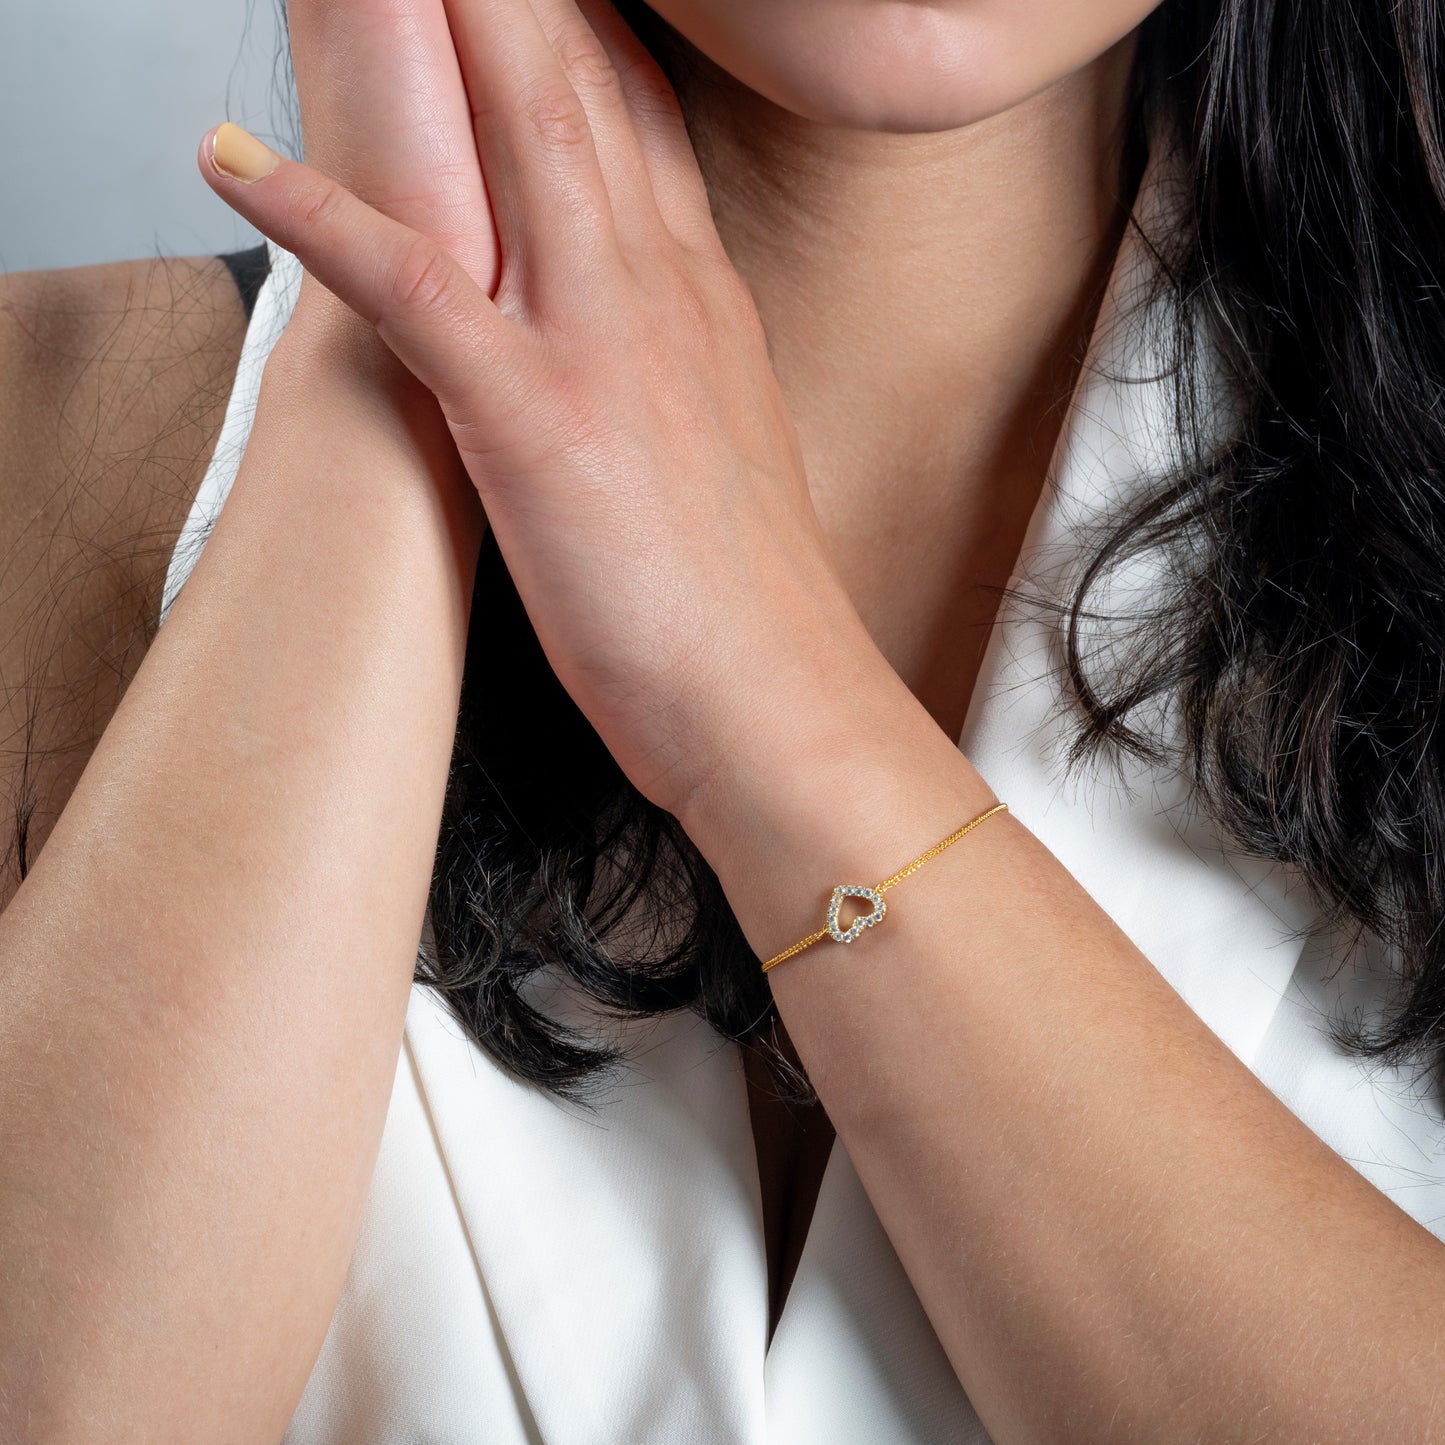 A model in white jacket wearing Love Heart CZ Gold Bracelet on her hand